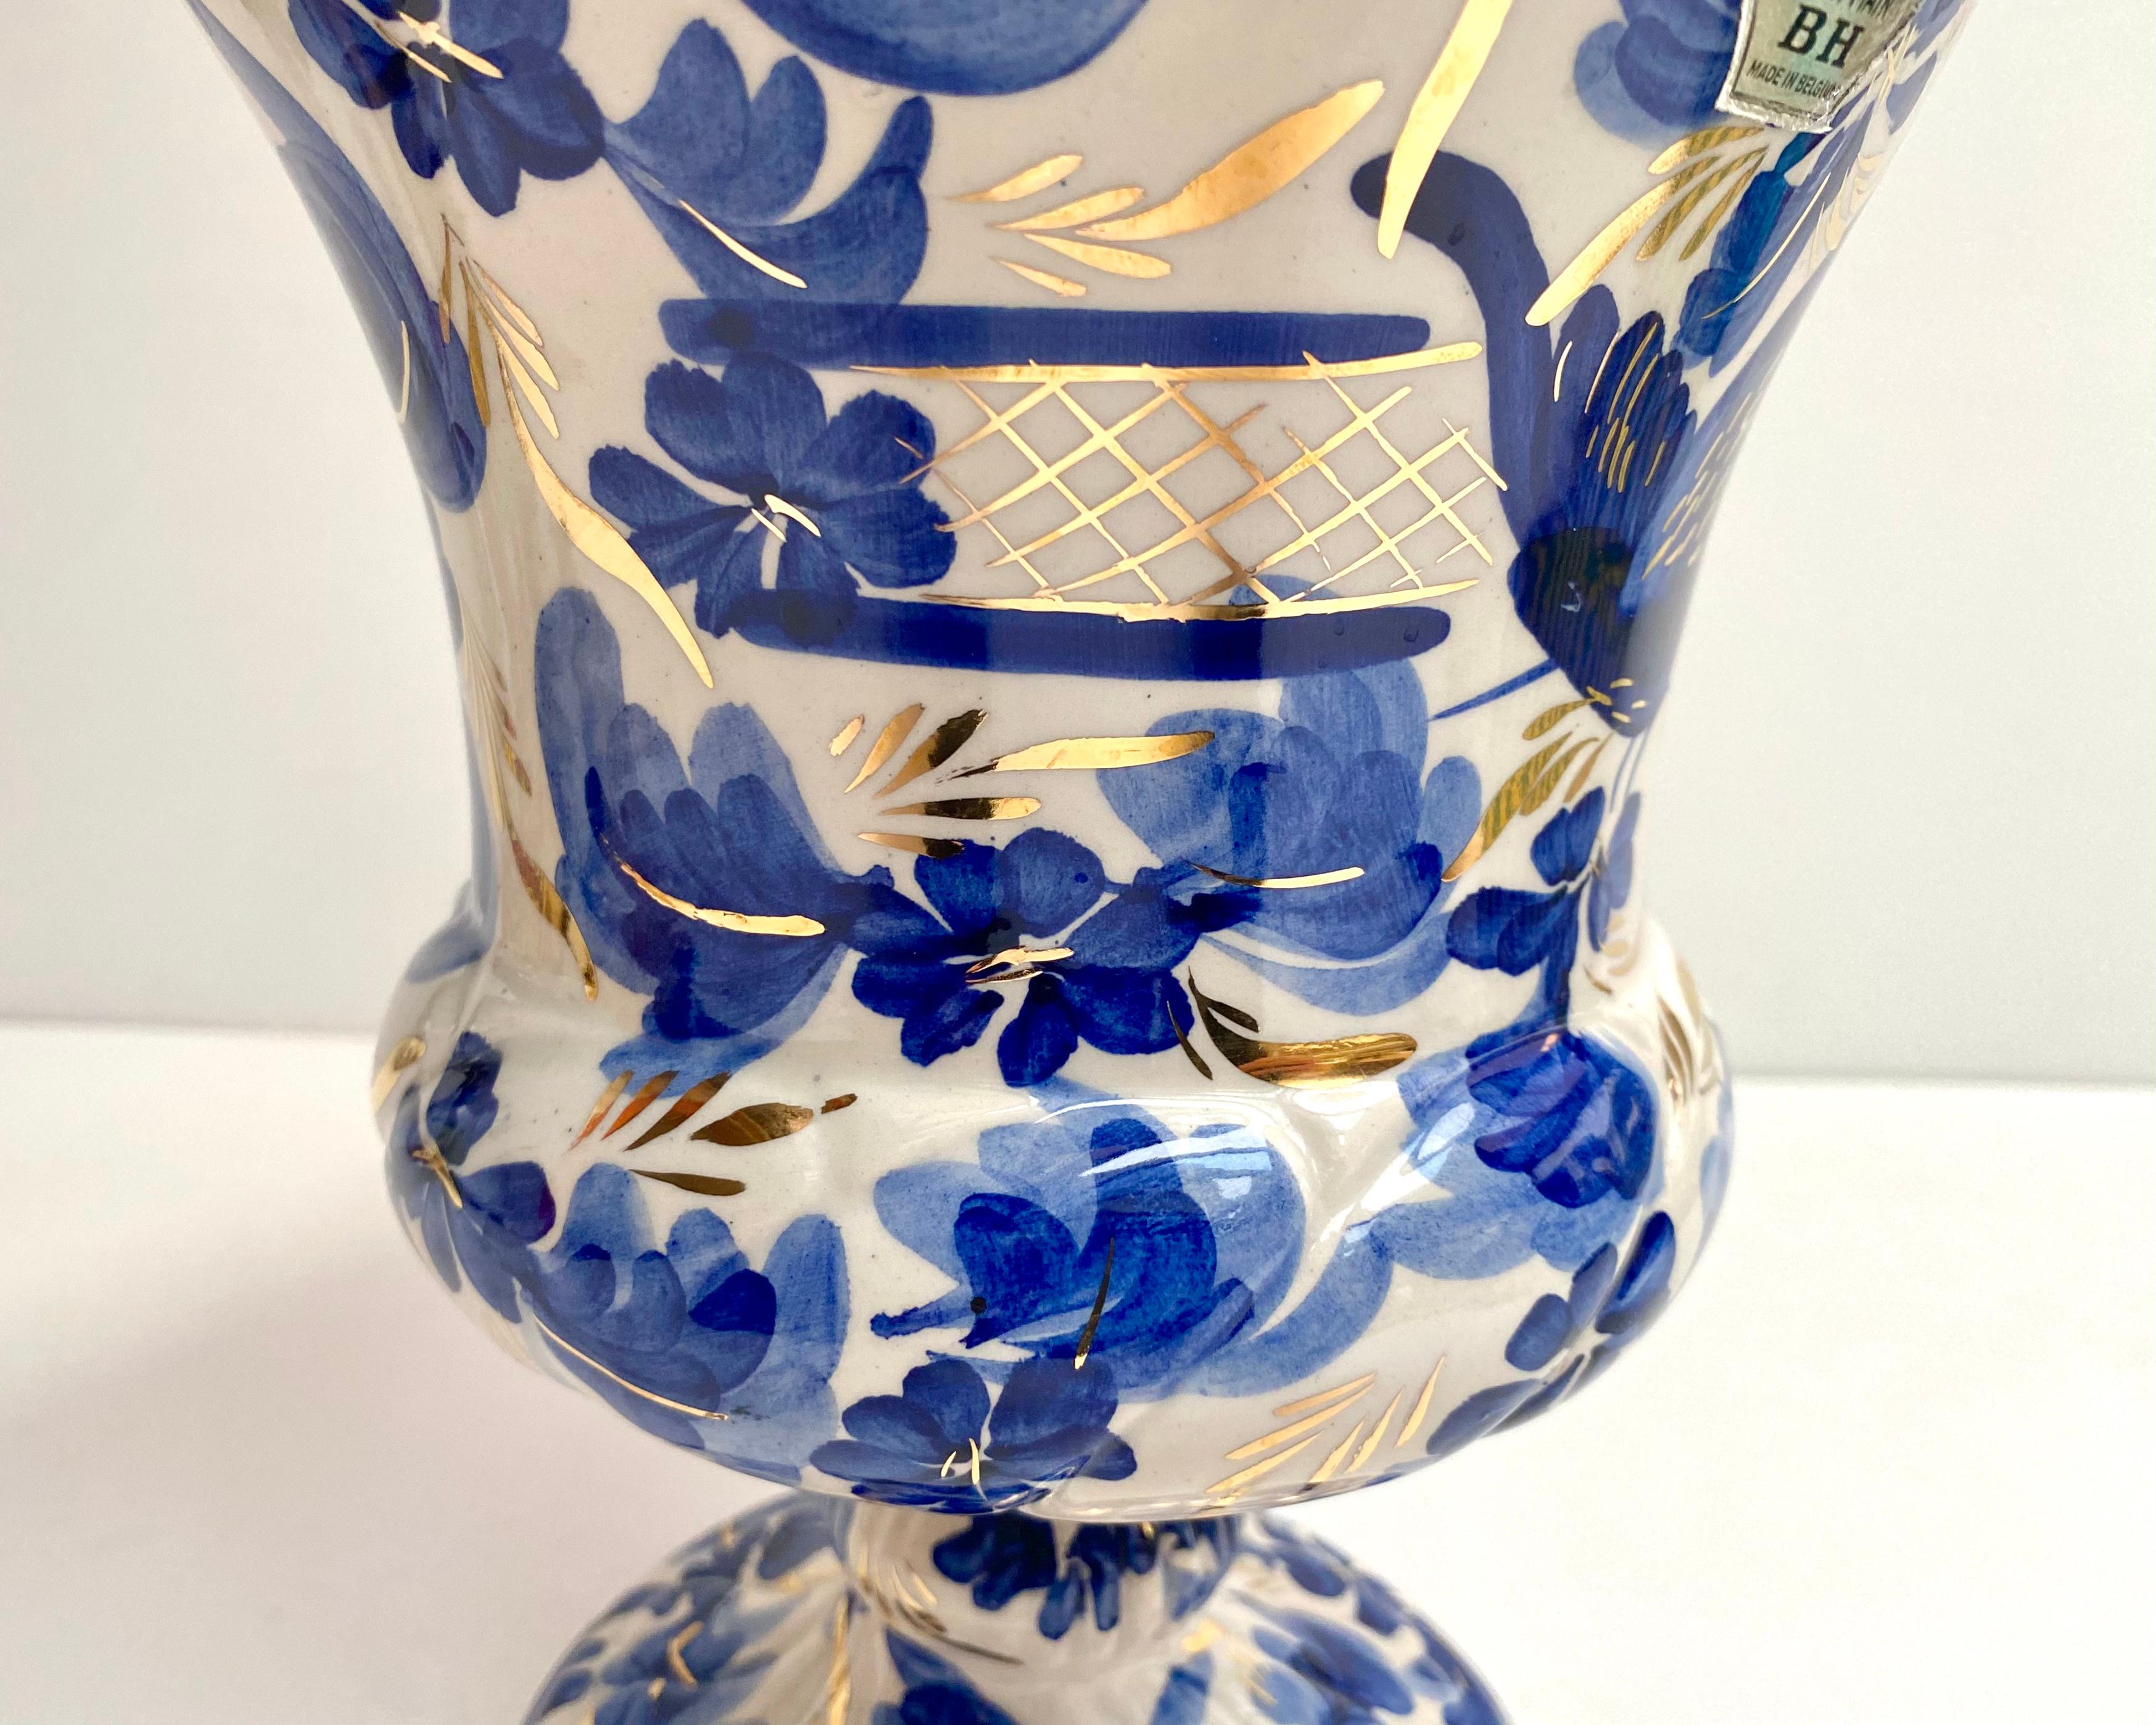 h bequet quaregnon vase value